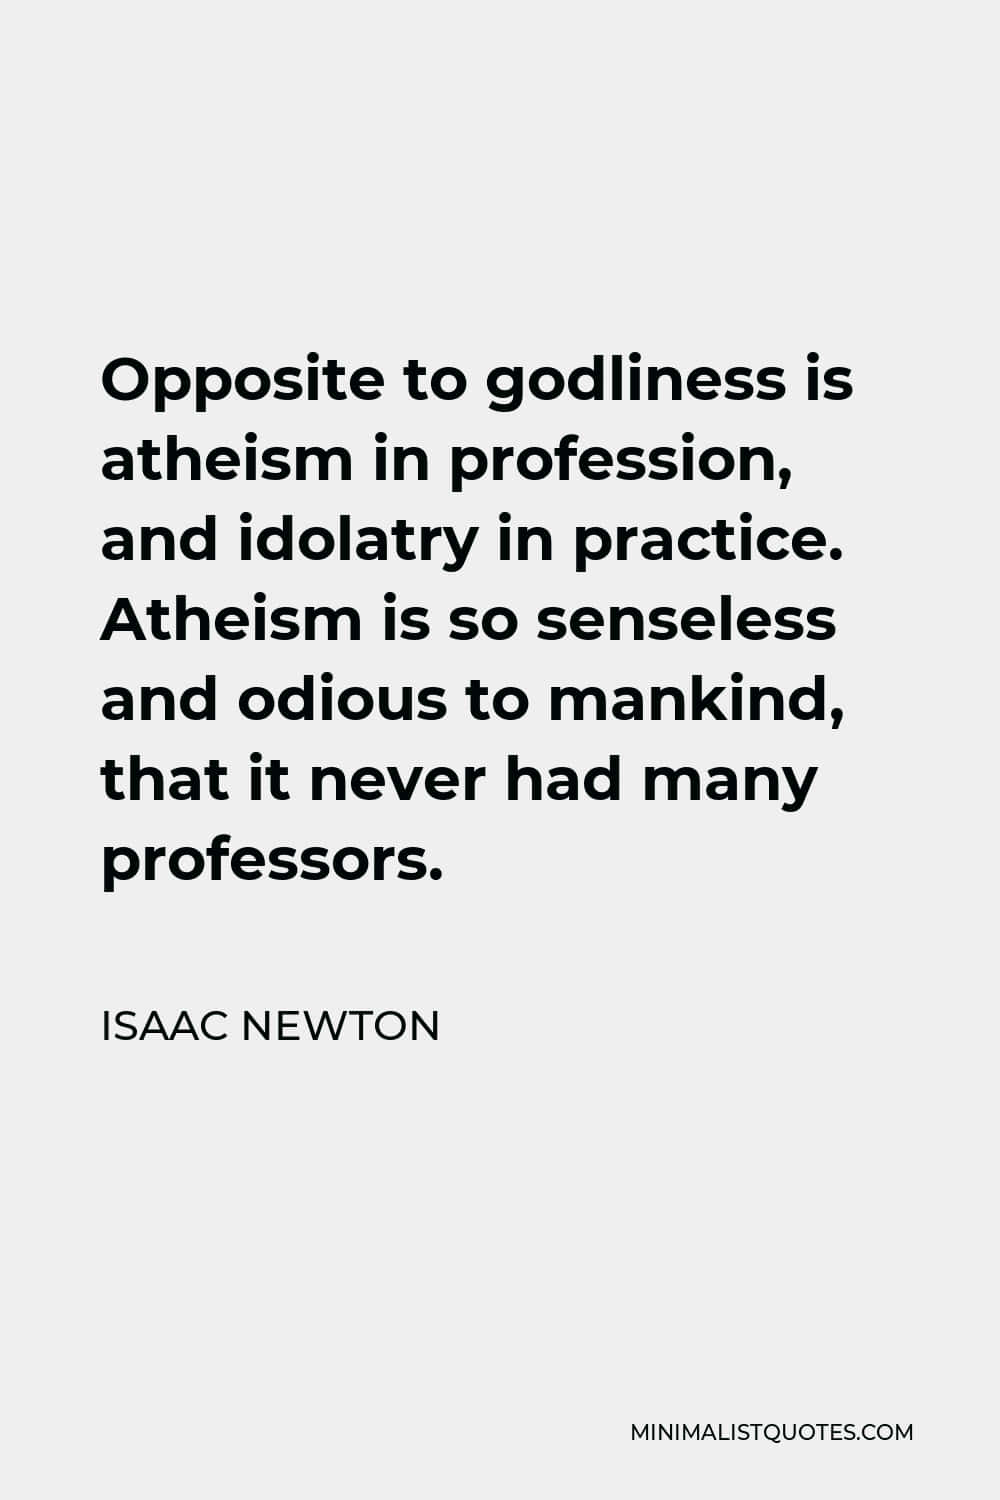 Elateísmo Es Odioso - Cita De Isaac Newton. Fondo de pantalla